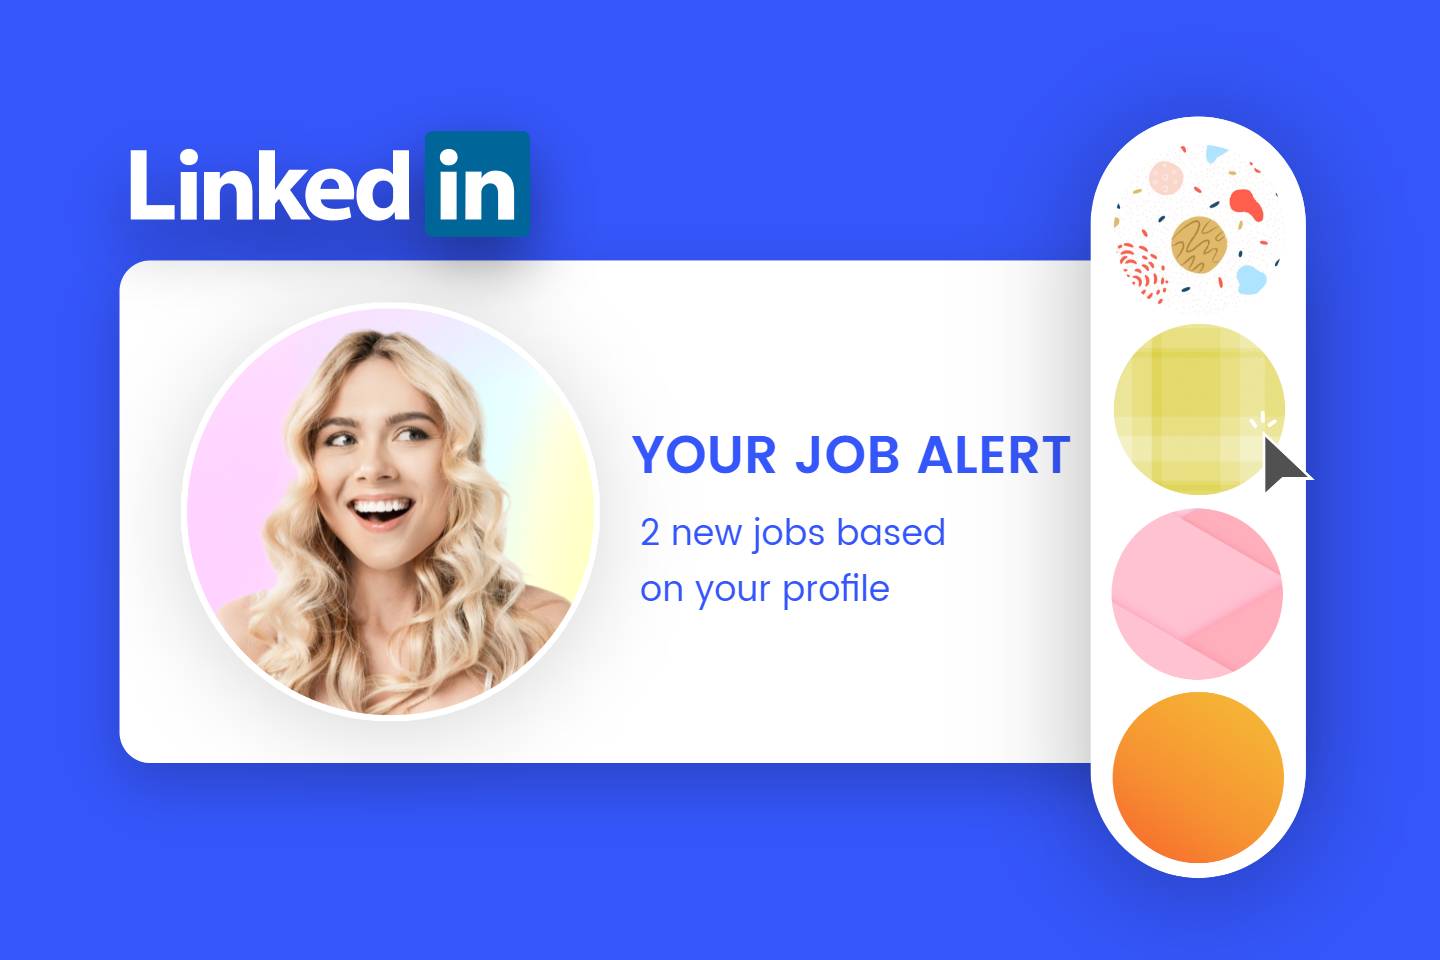 LinkedIn Profile Picture Maker: Create LinkedIn Profile Photo for